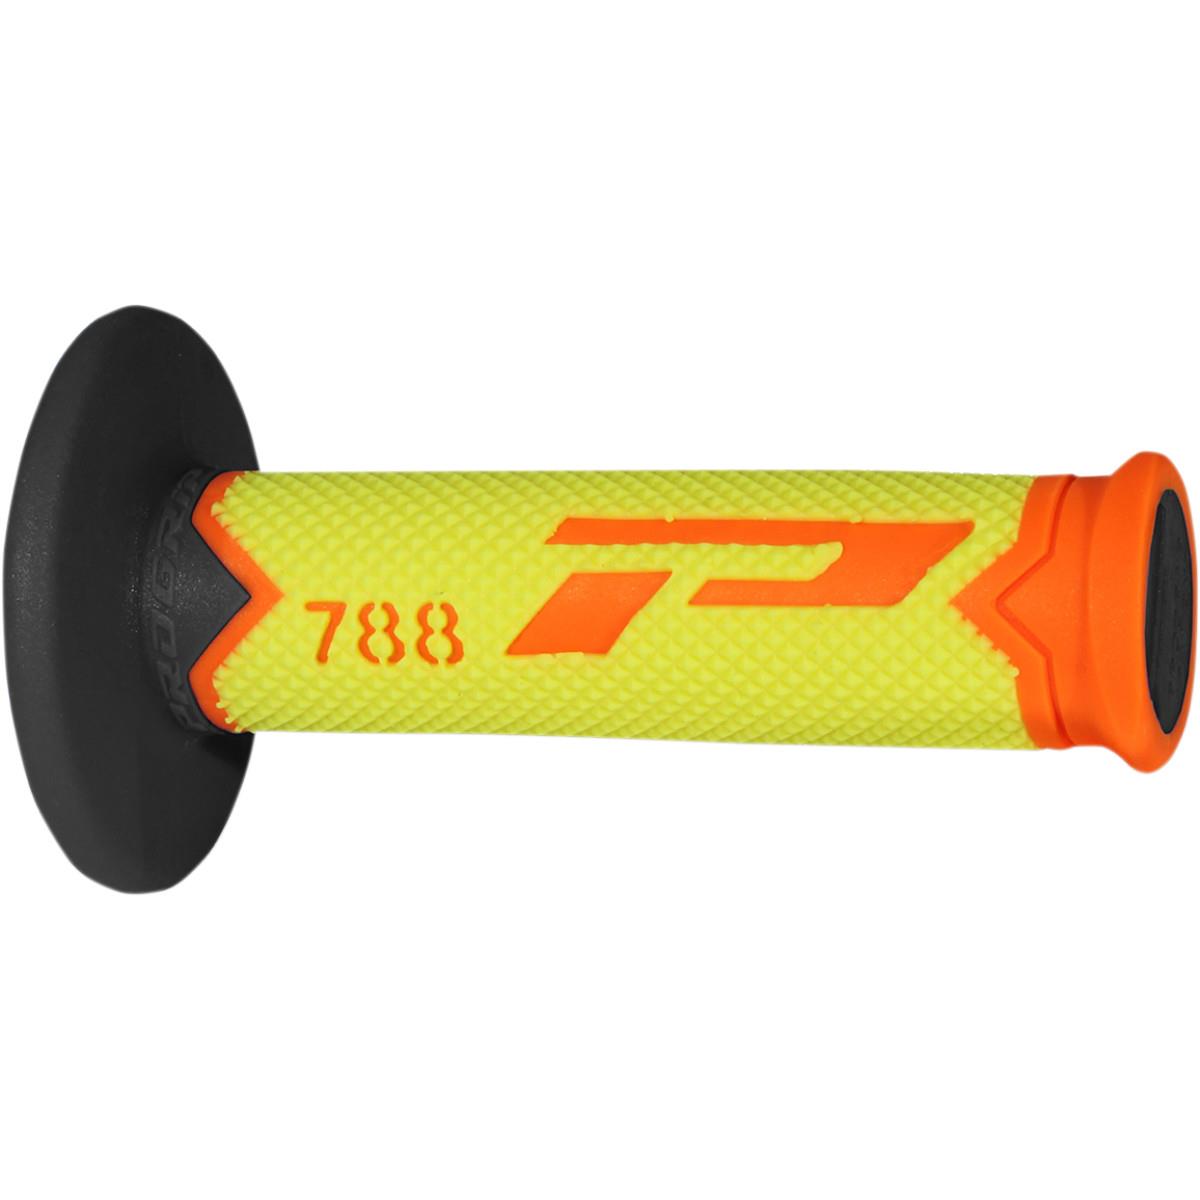 ProGrip Griffe 788 Fluo Orange/Fluo Gelb/Schwarz